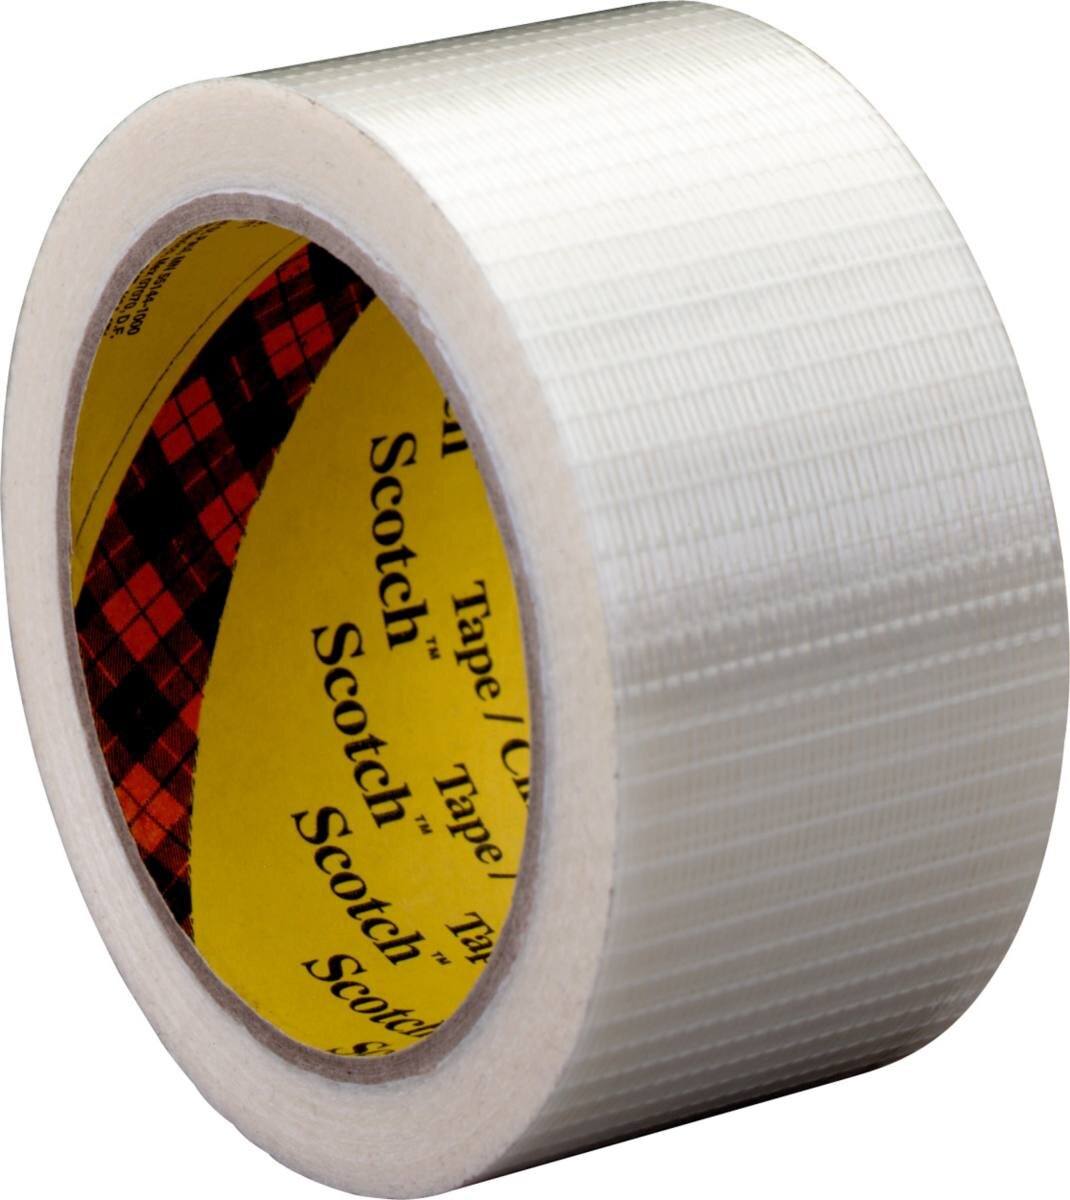 3M Scotch Filament Adhesive Tape 8959, Trasparente, 38 mm x 50 m, 0,145 mm